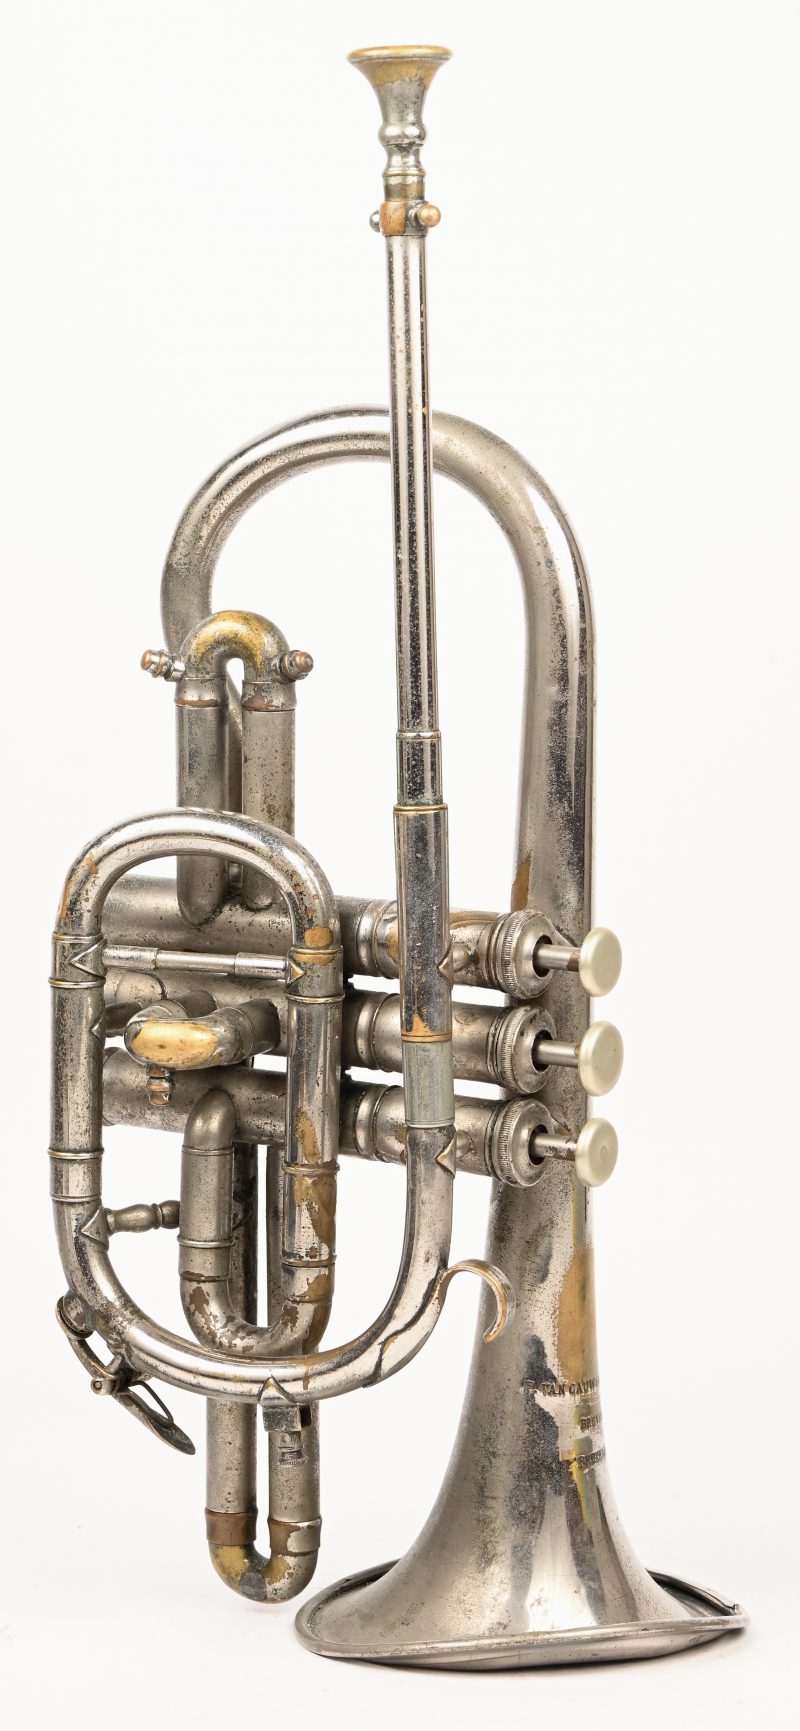 Een vintage trompet cornet, met inscriptie “F. VAN CAUWELAERT BREVETÉ BRUXELLES”. Hoorn met plooi aan de rand.